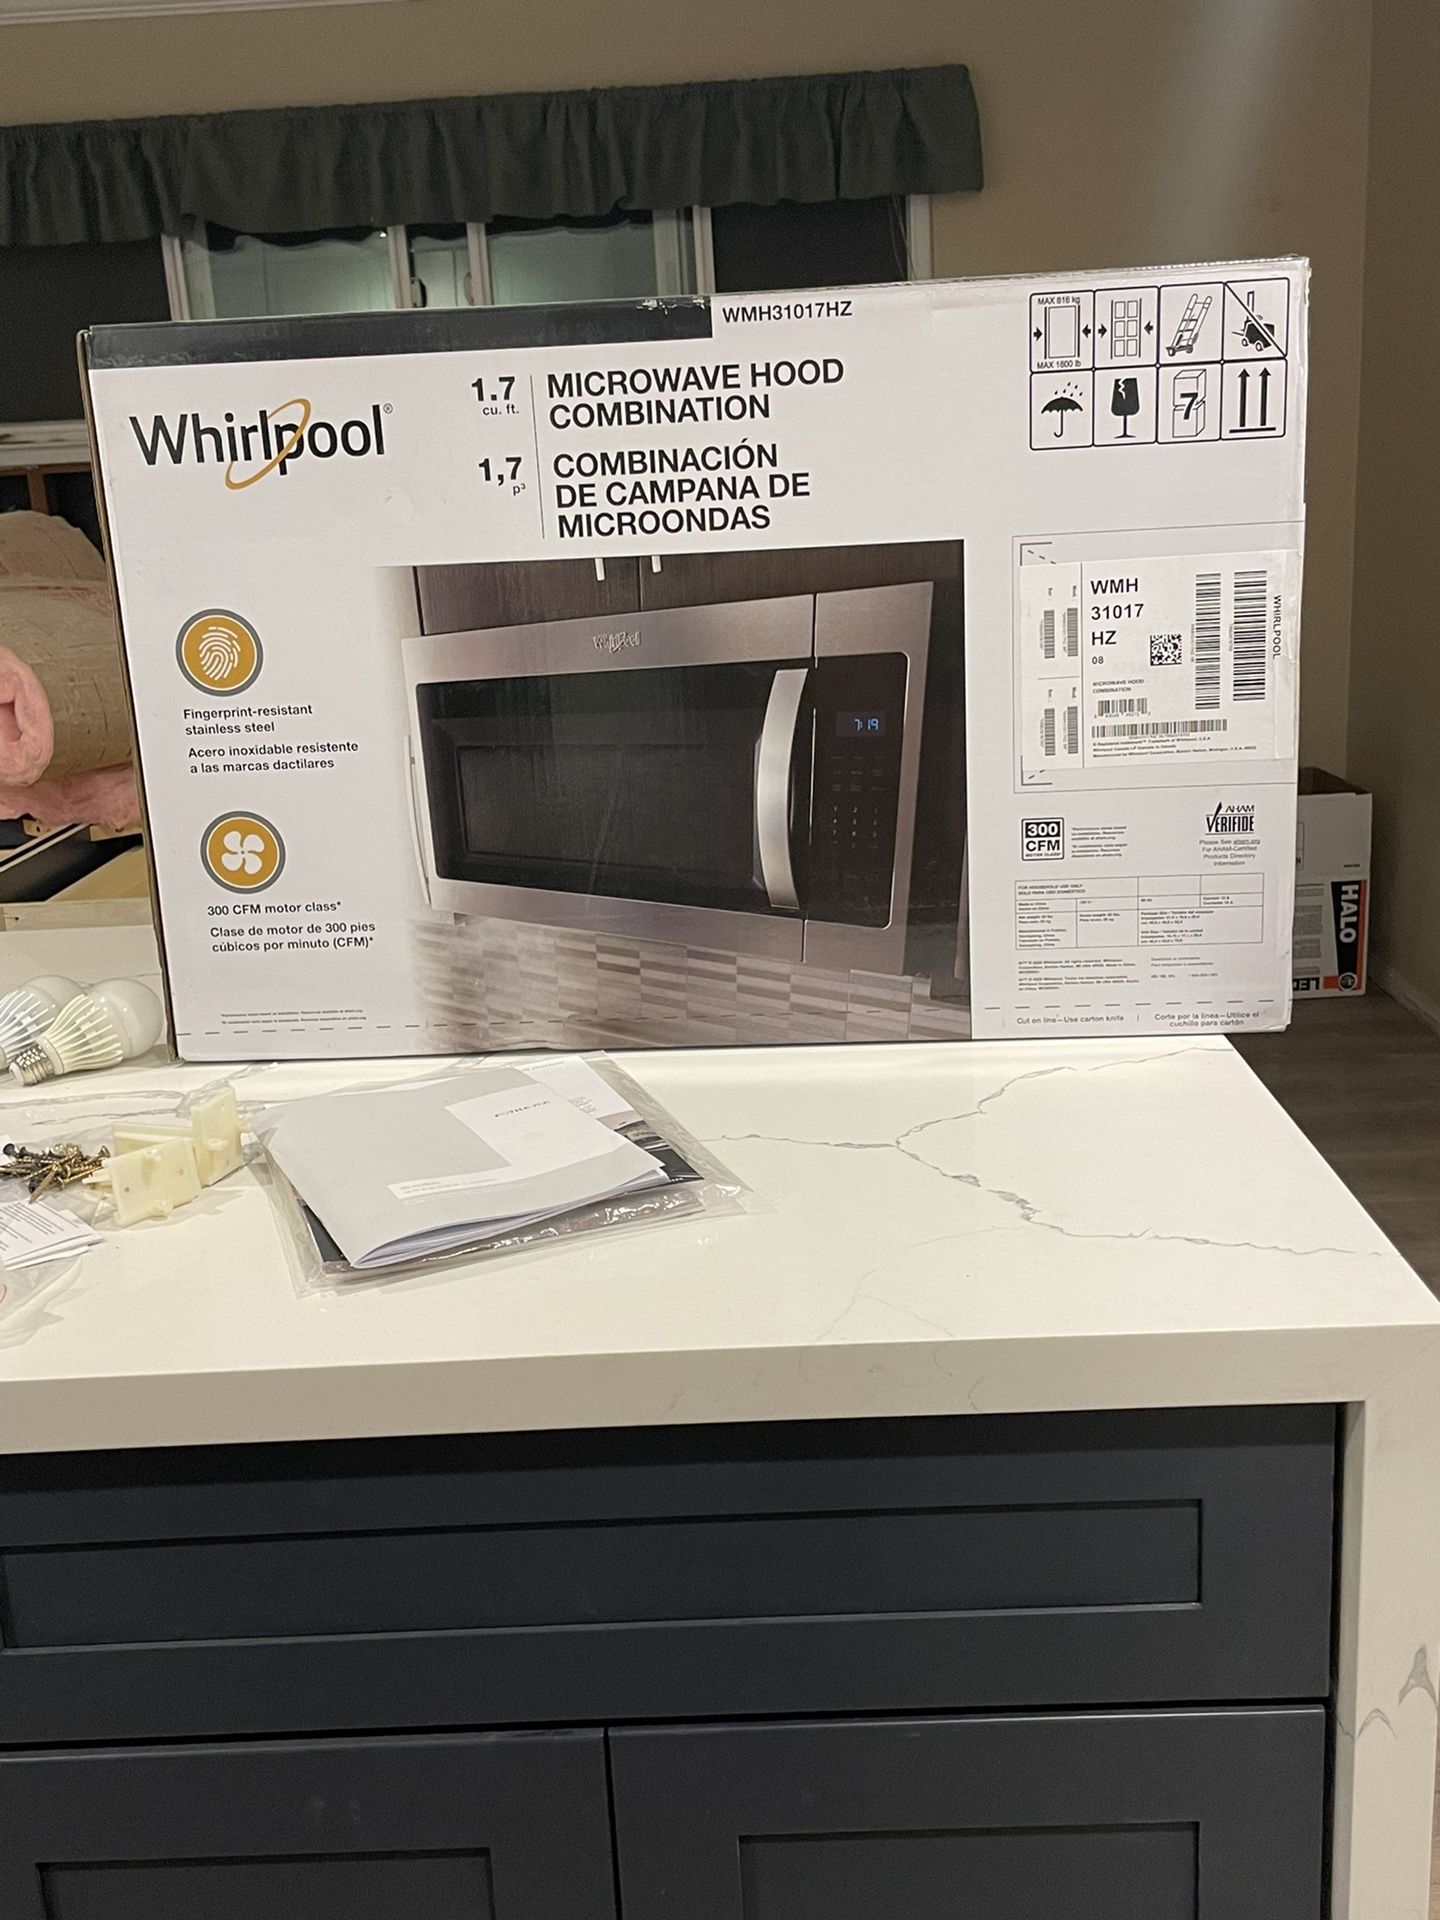 Whirlpool New Microwave Hood Combination 